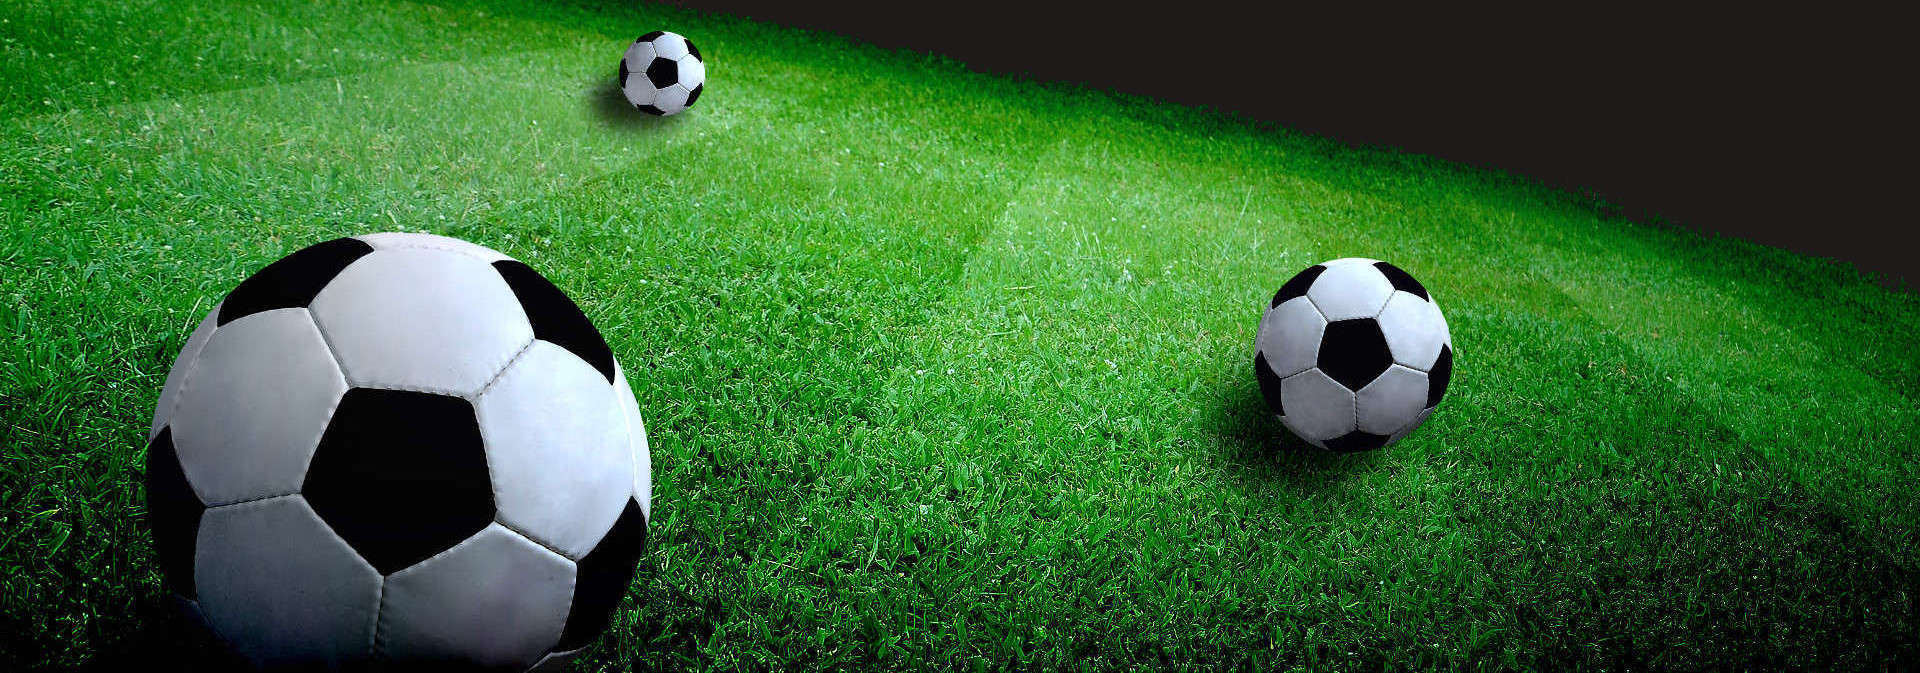 Exercicios de futebol, treinamento para futebol Soccer-Trainer Online